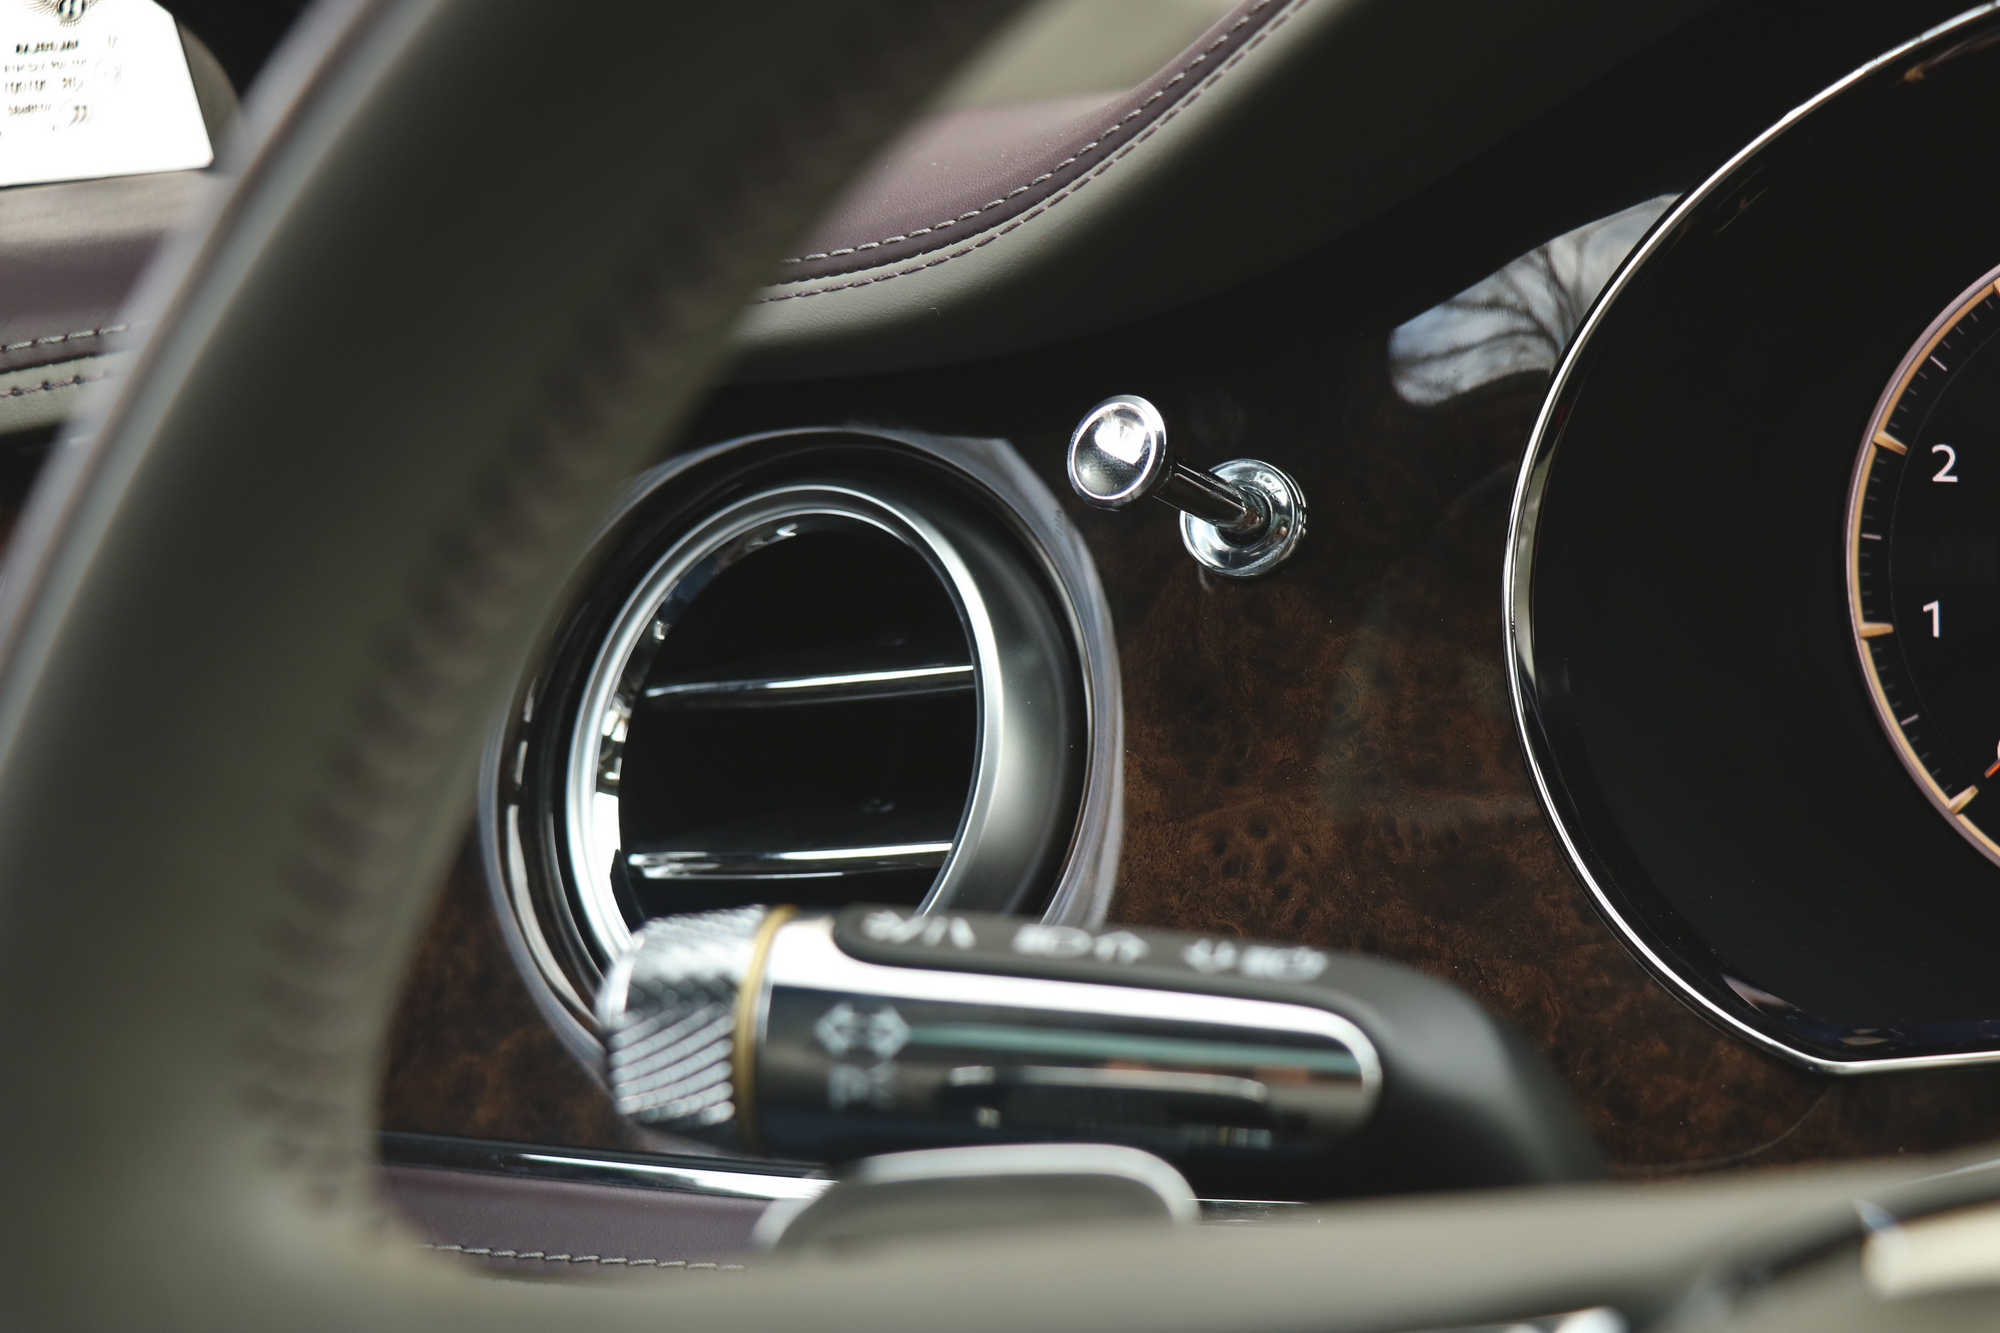 Spúrok kíméljenek! – Vezettük a 112 milliós Bentleyt 39